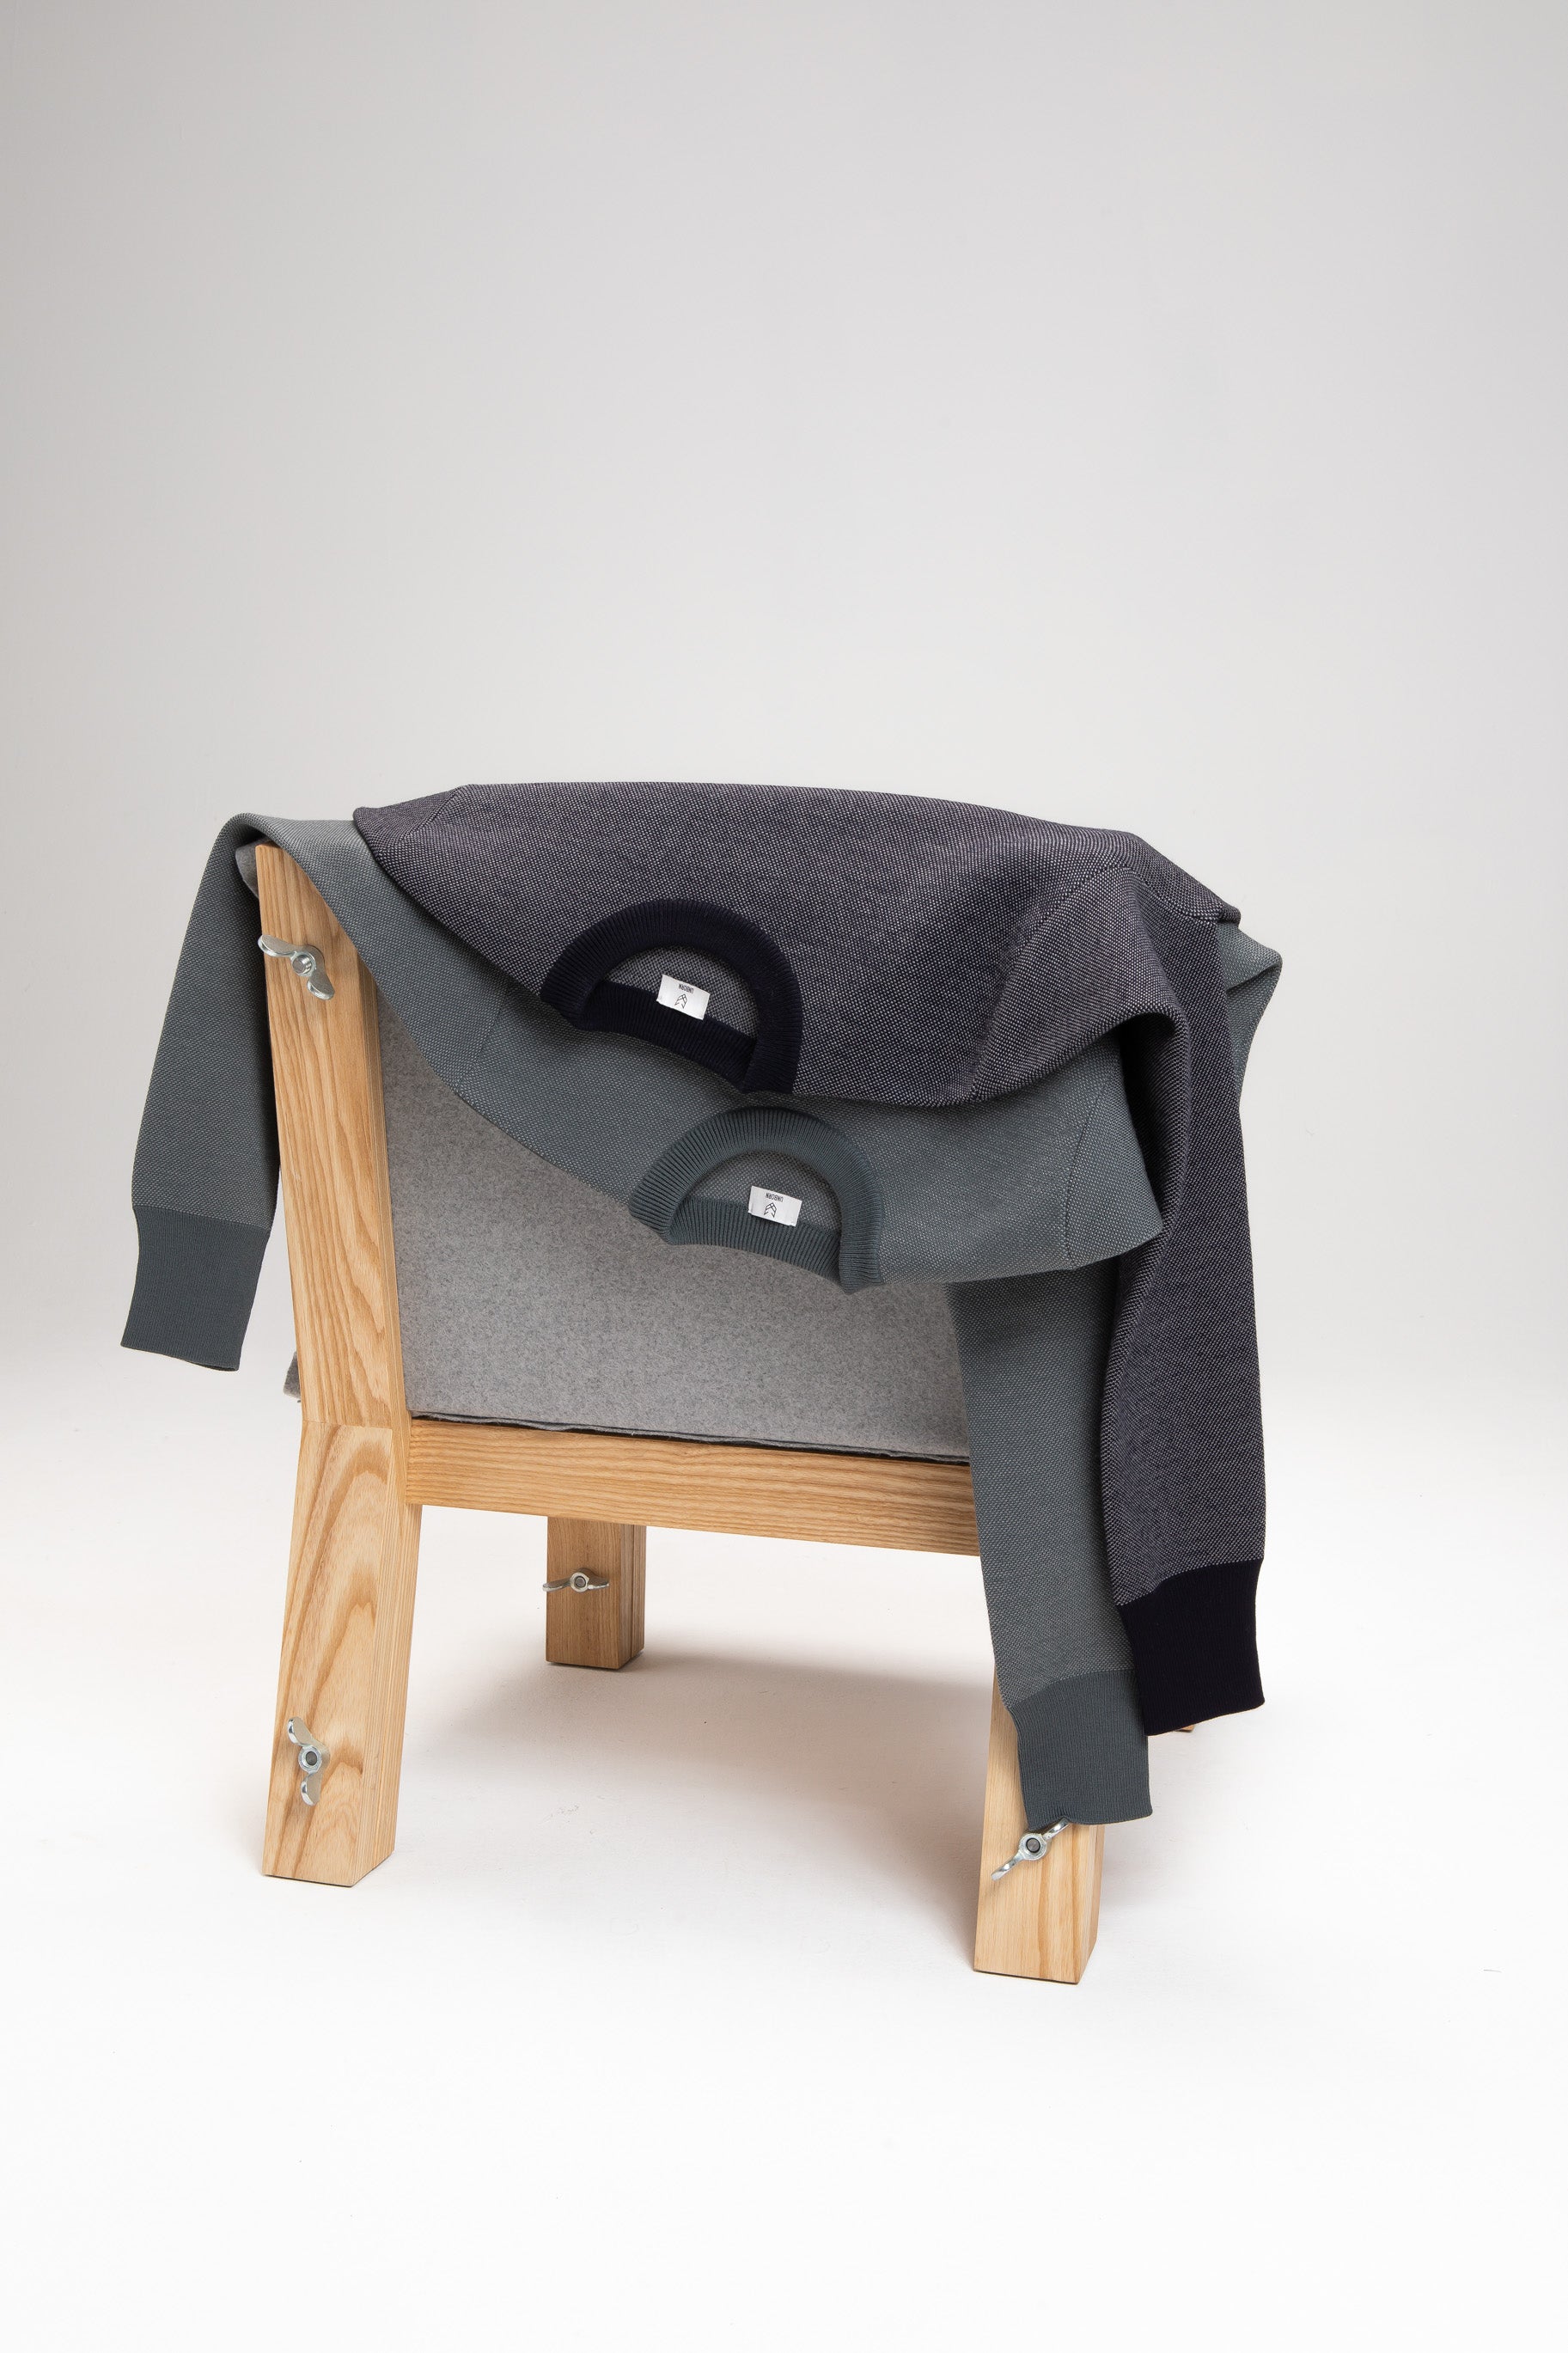 Merino Jacquard Sweater Hanging Chair Studio